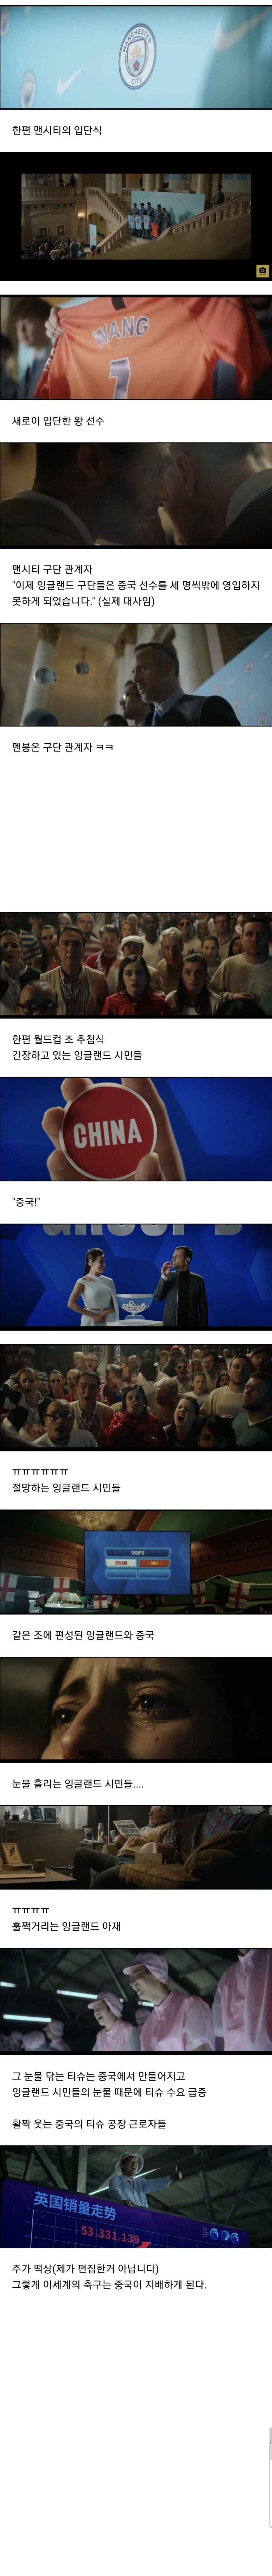 다시보는 중국 축구 레전드 광고